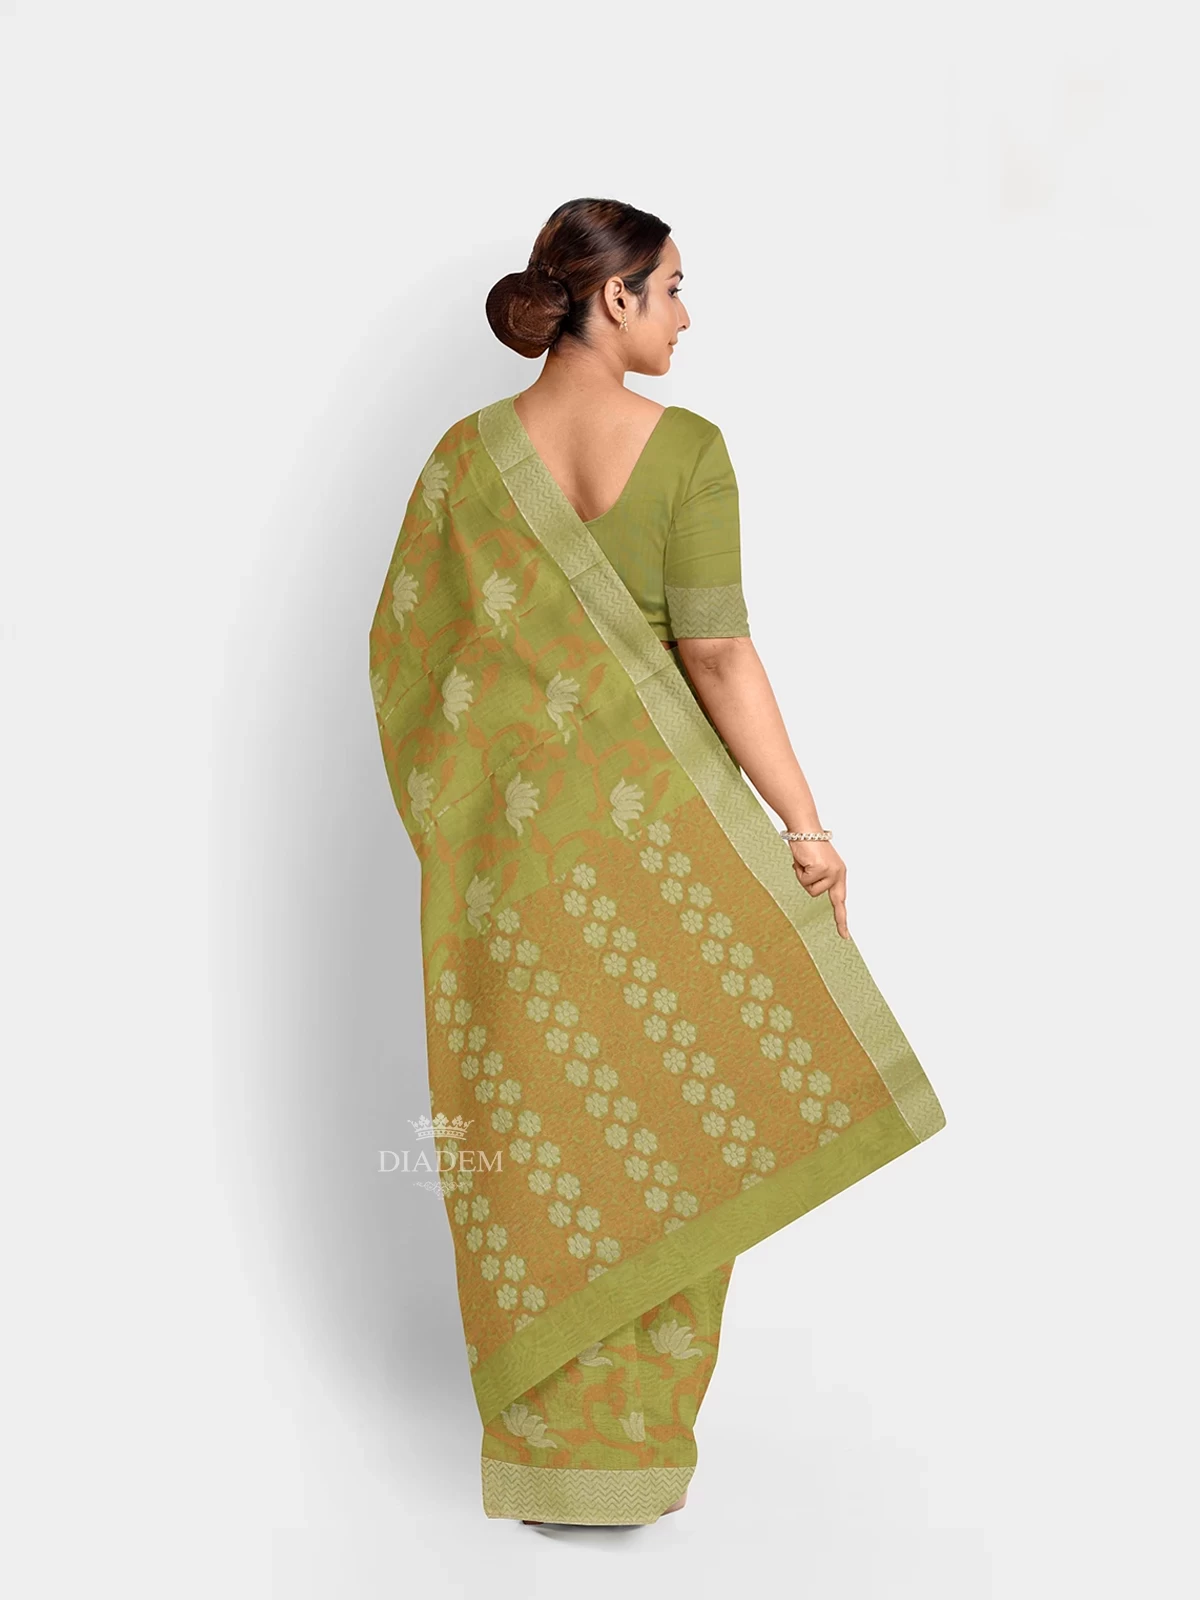 Pista Green Silk Cotton Saree With Zari Butta On The Body And Silver Zari Border.